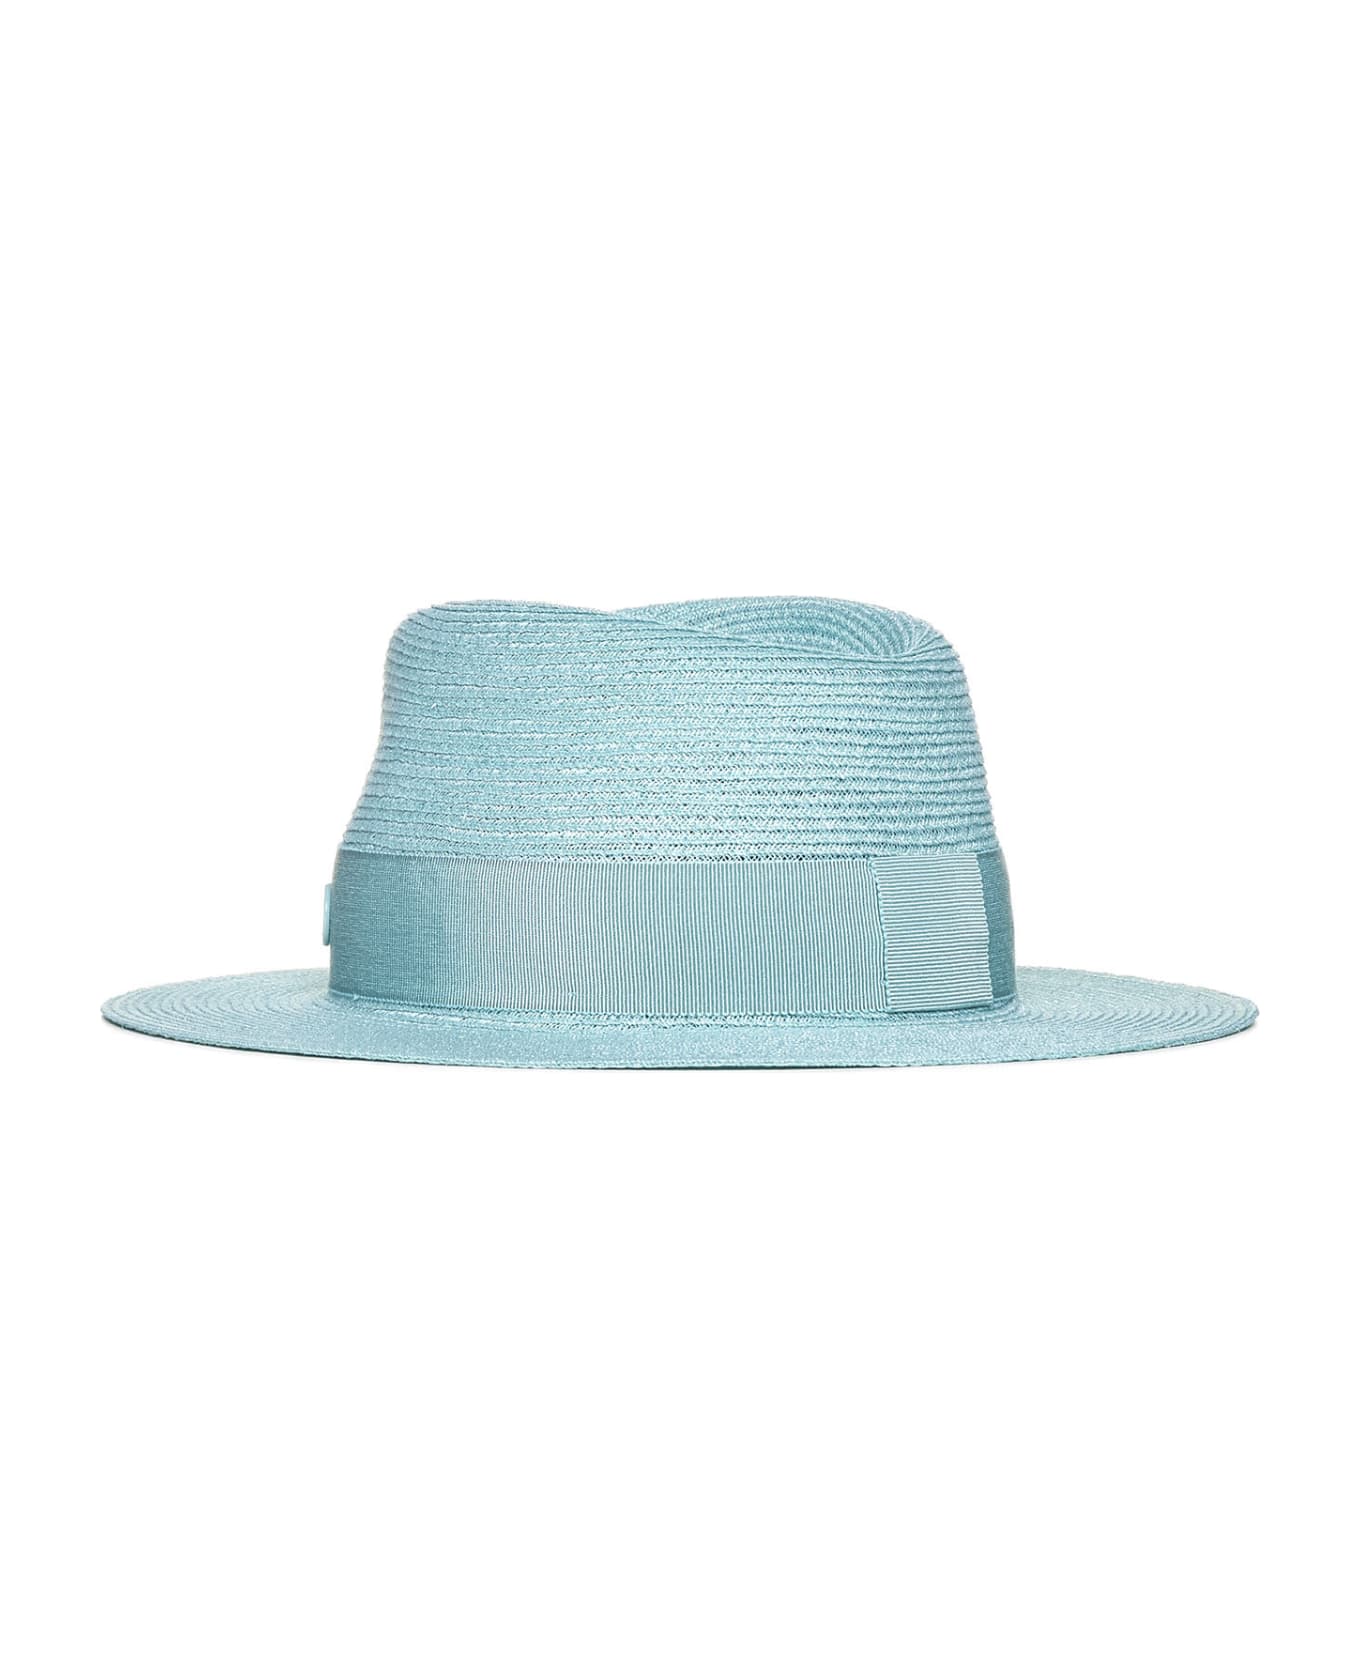 Maison Michel Hat - Aqua blue 帽子